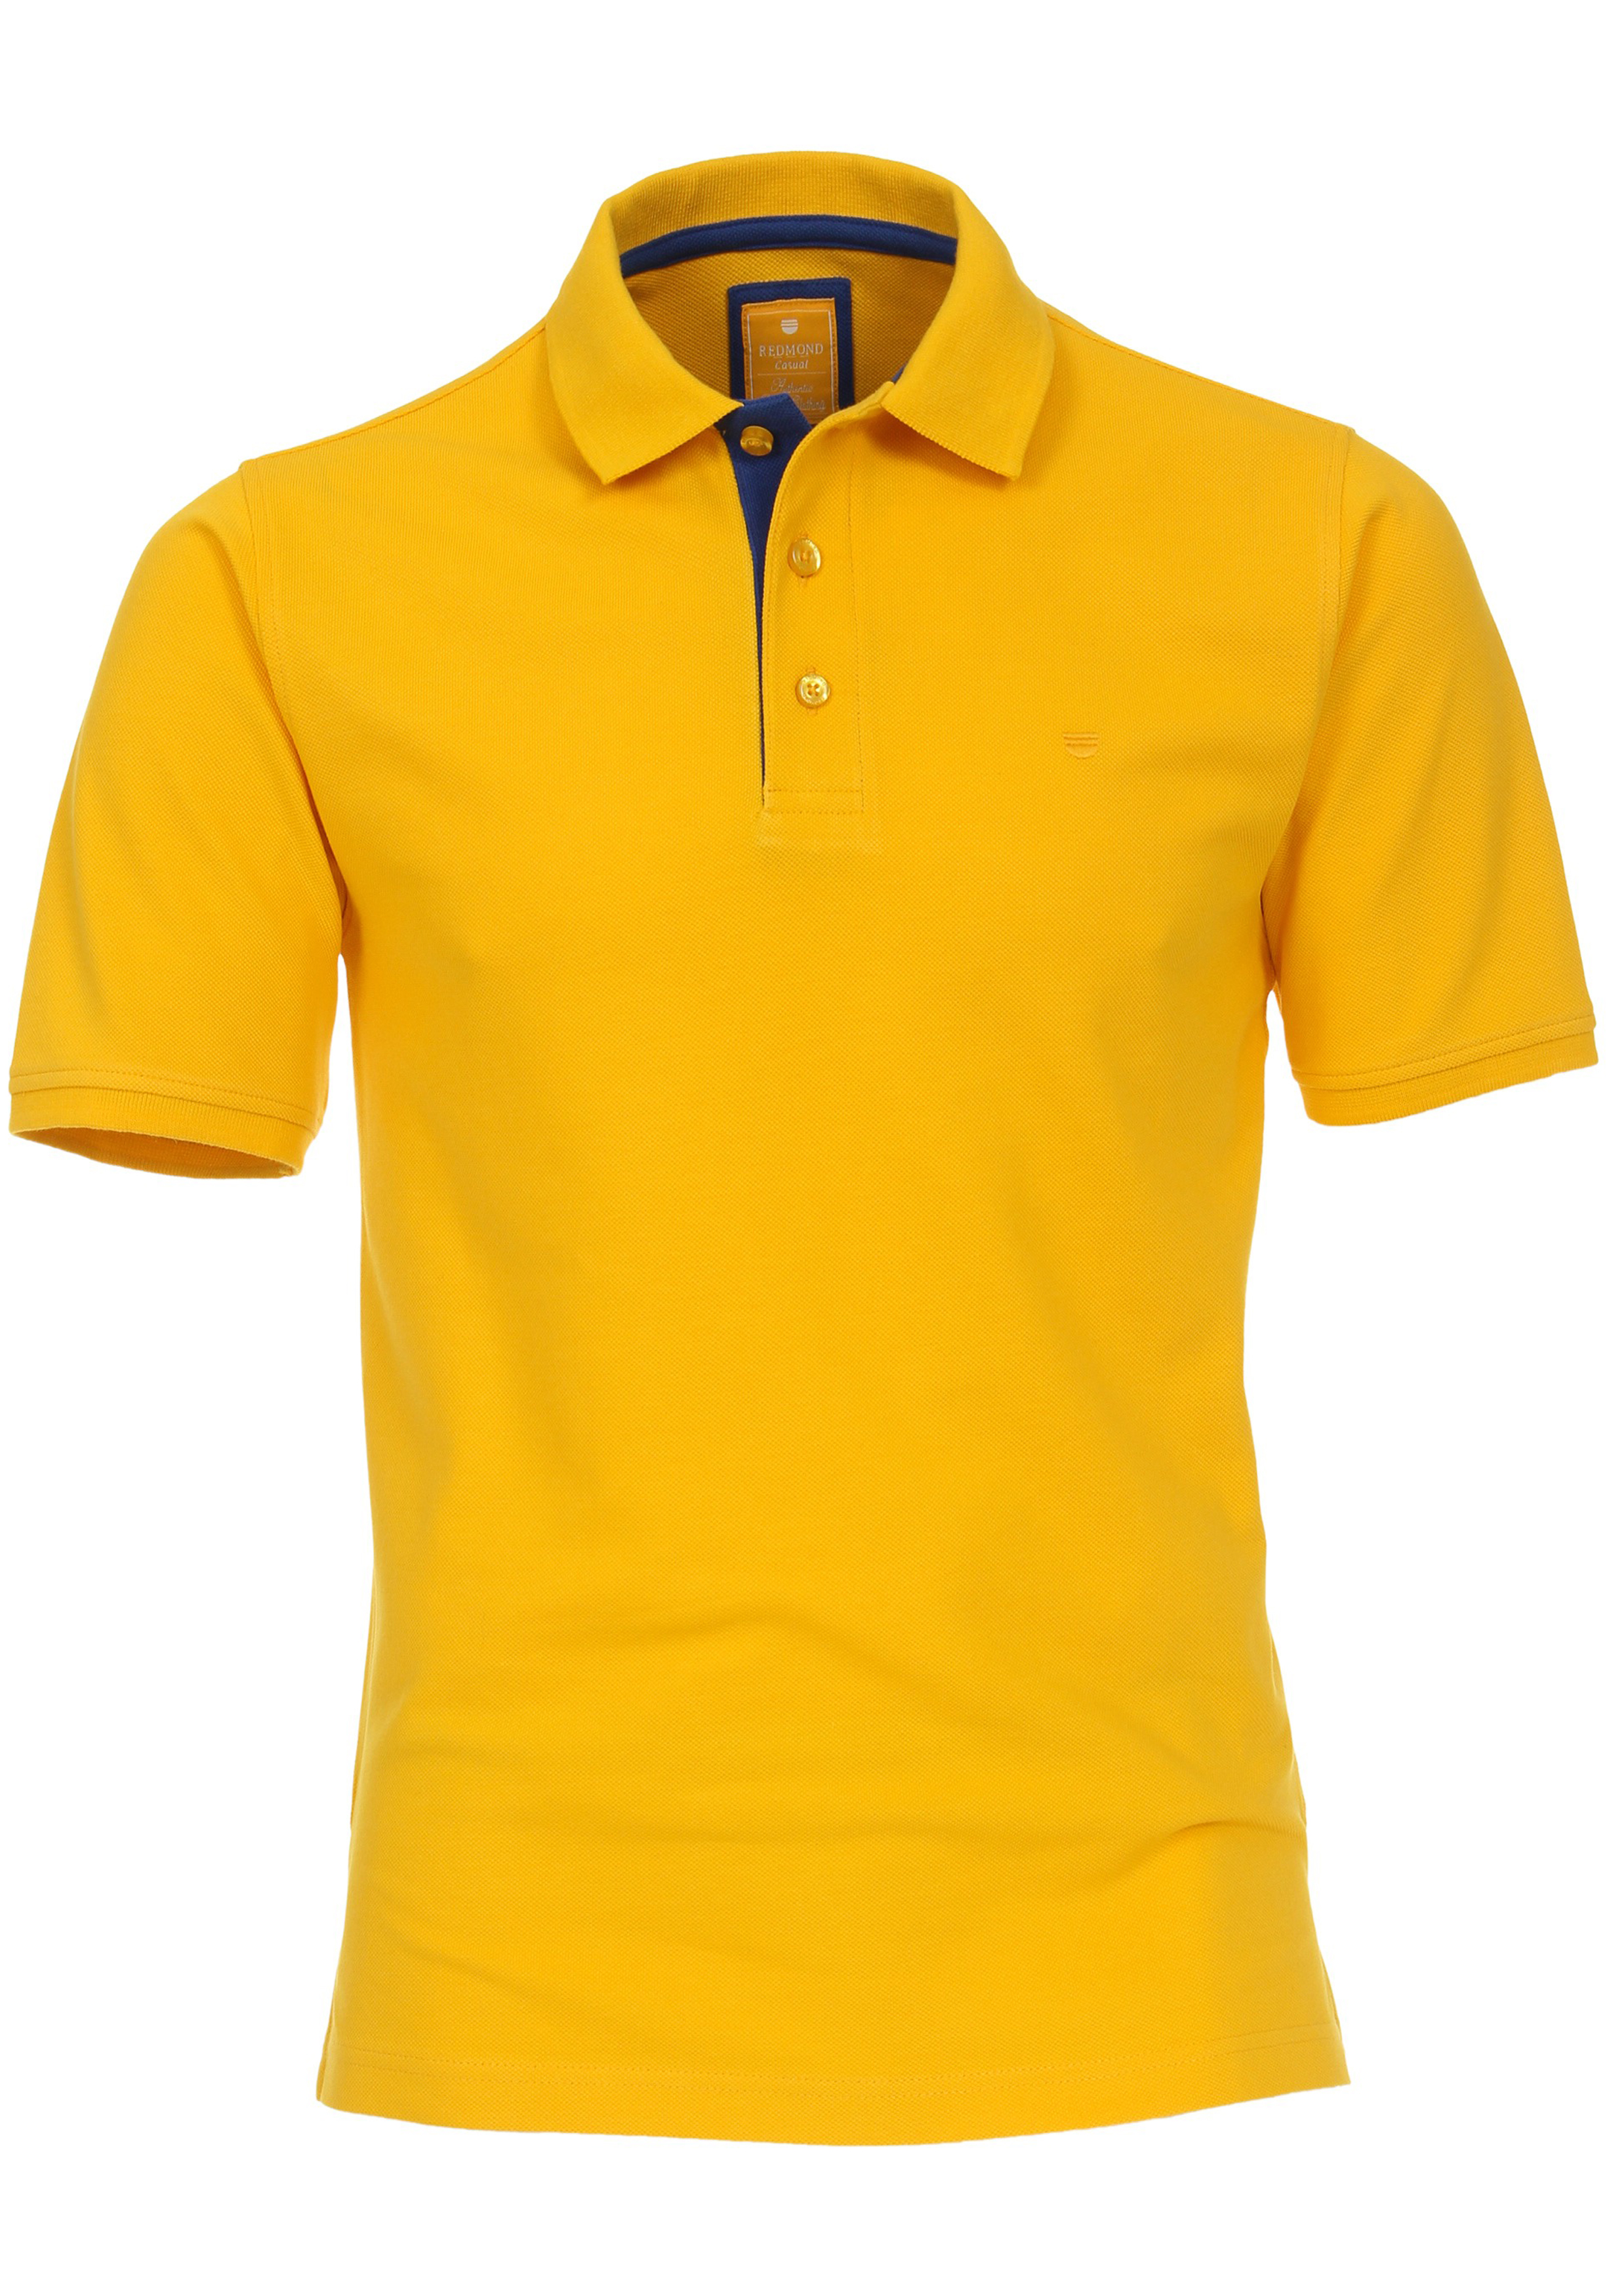 hervorming Onderdompeling Geschatte Redmond modern fit poloshirt, geel (blauw contrast) - Shop de nieuwste  voorjaarsmode